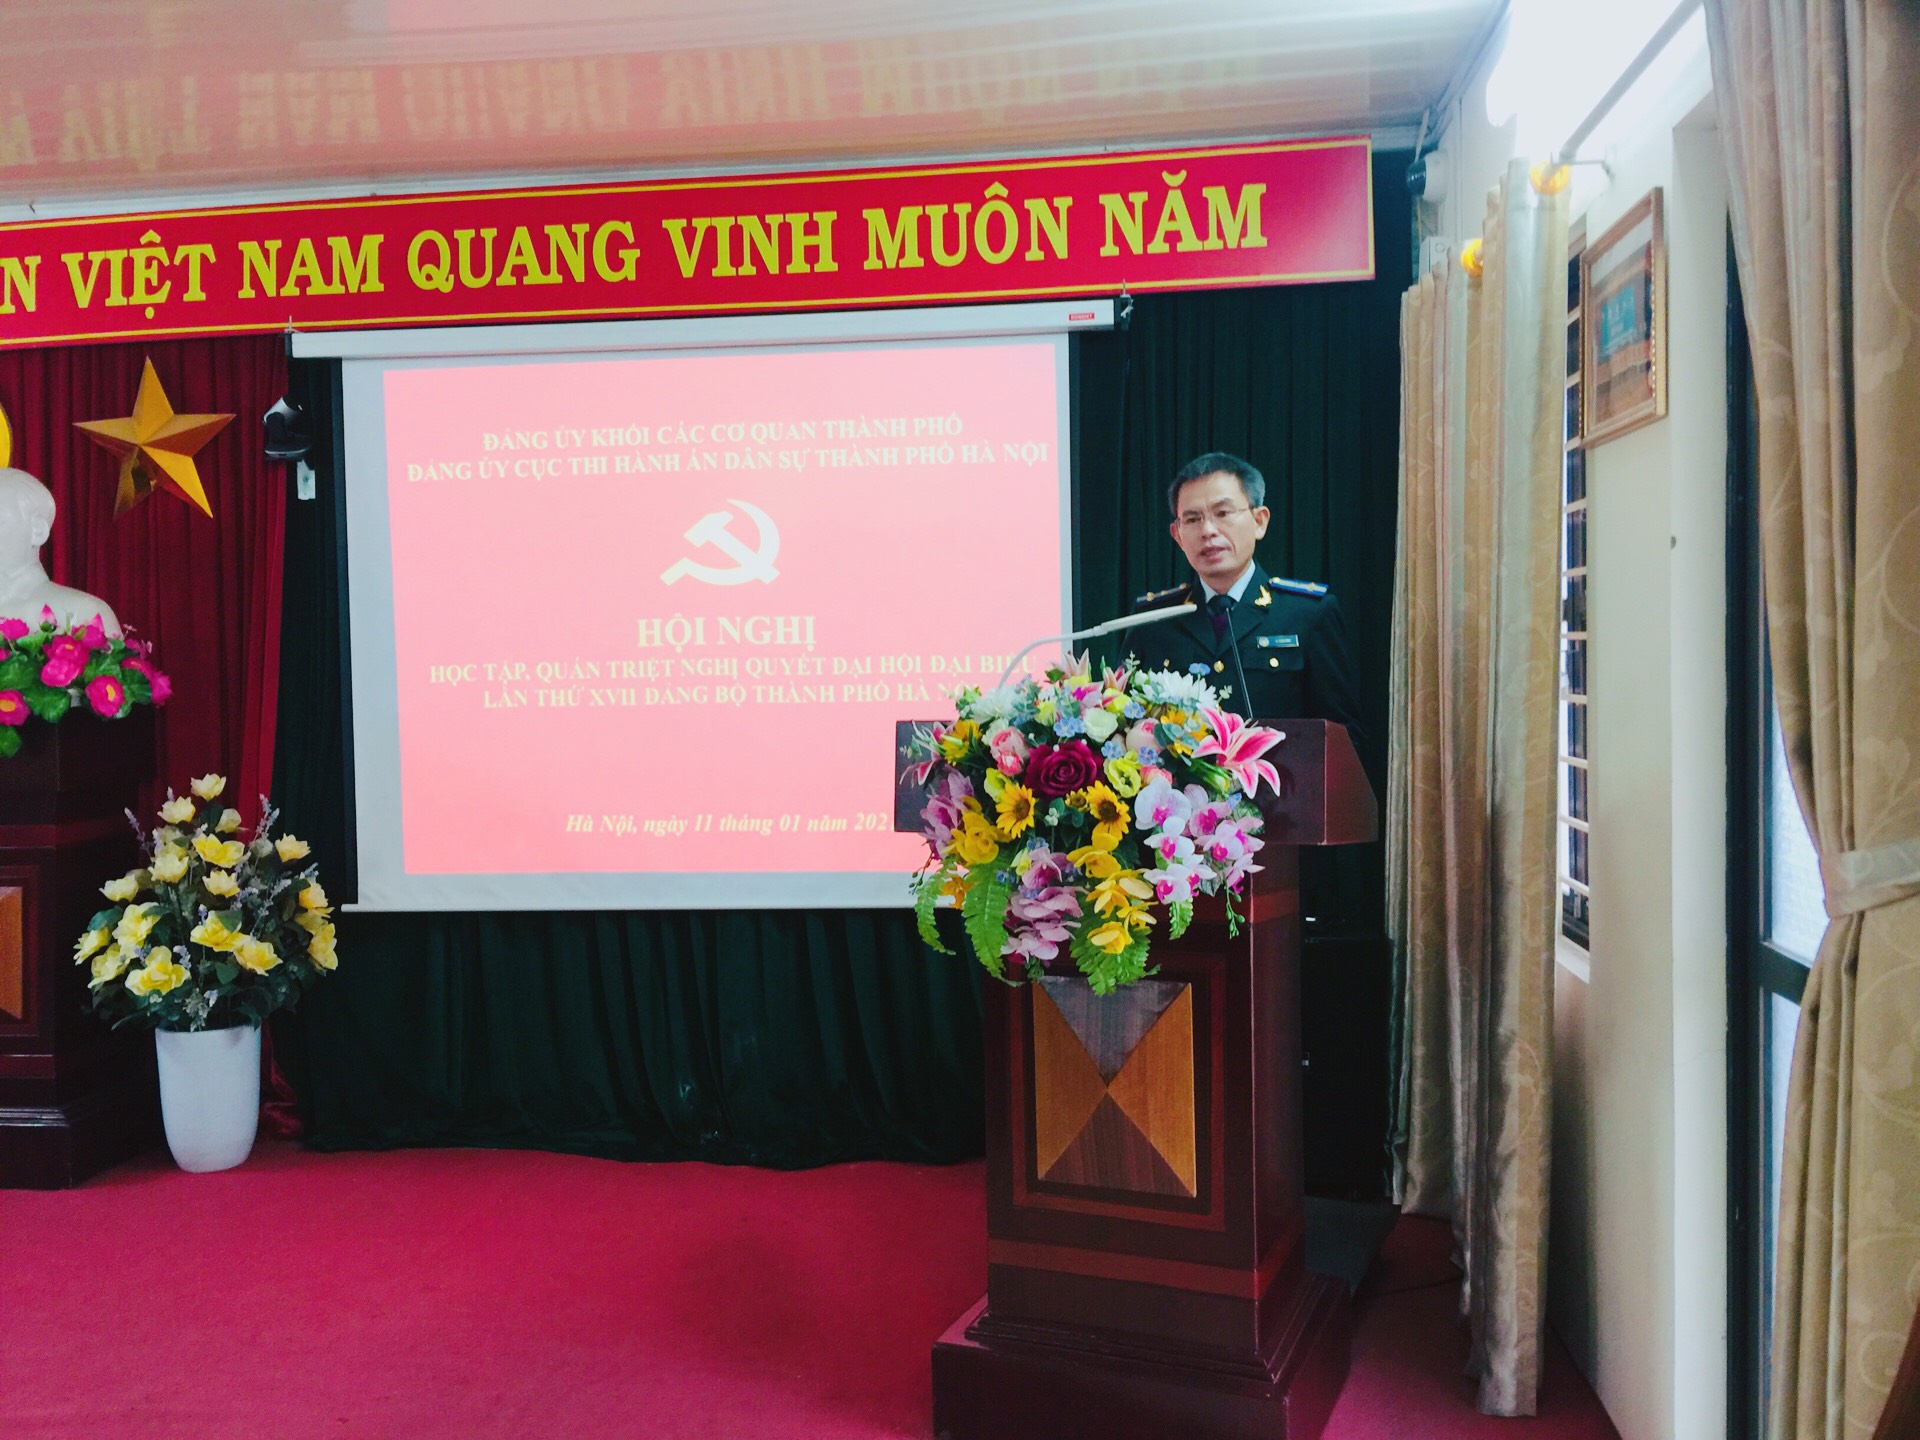 Đảng ủy Cục Thi hành án dân sự thành phố Hà Nội tổ chức Hội nghị học tập, quán triệt Nghị quyết Đại hội Đại biểu lần thứ XVII Đảng bộ Thành phố Hà Nội